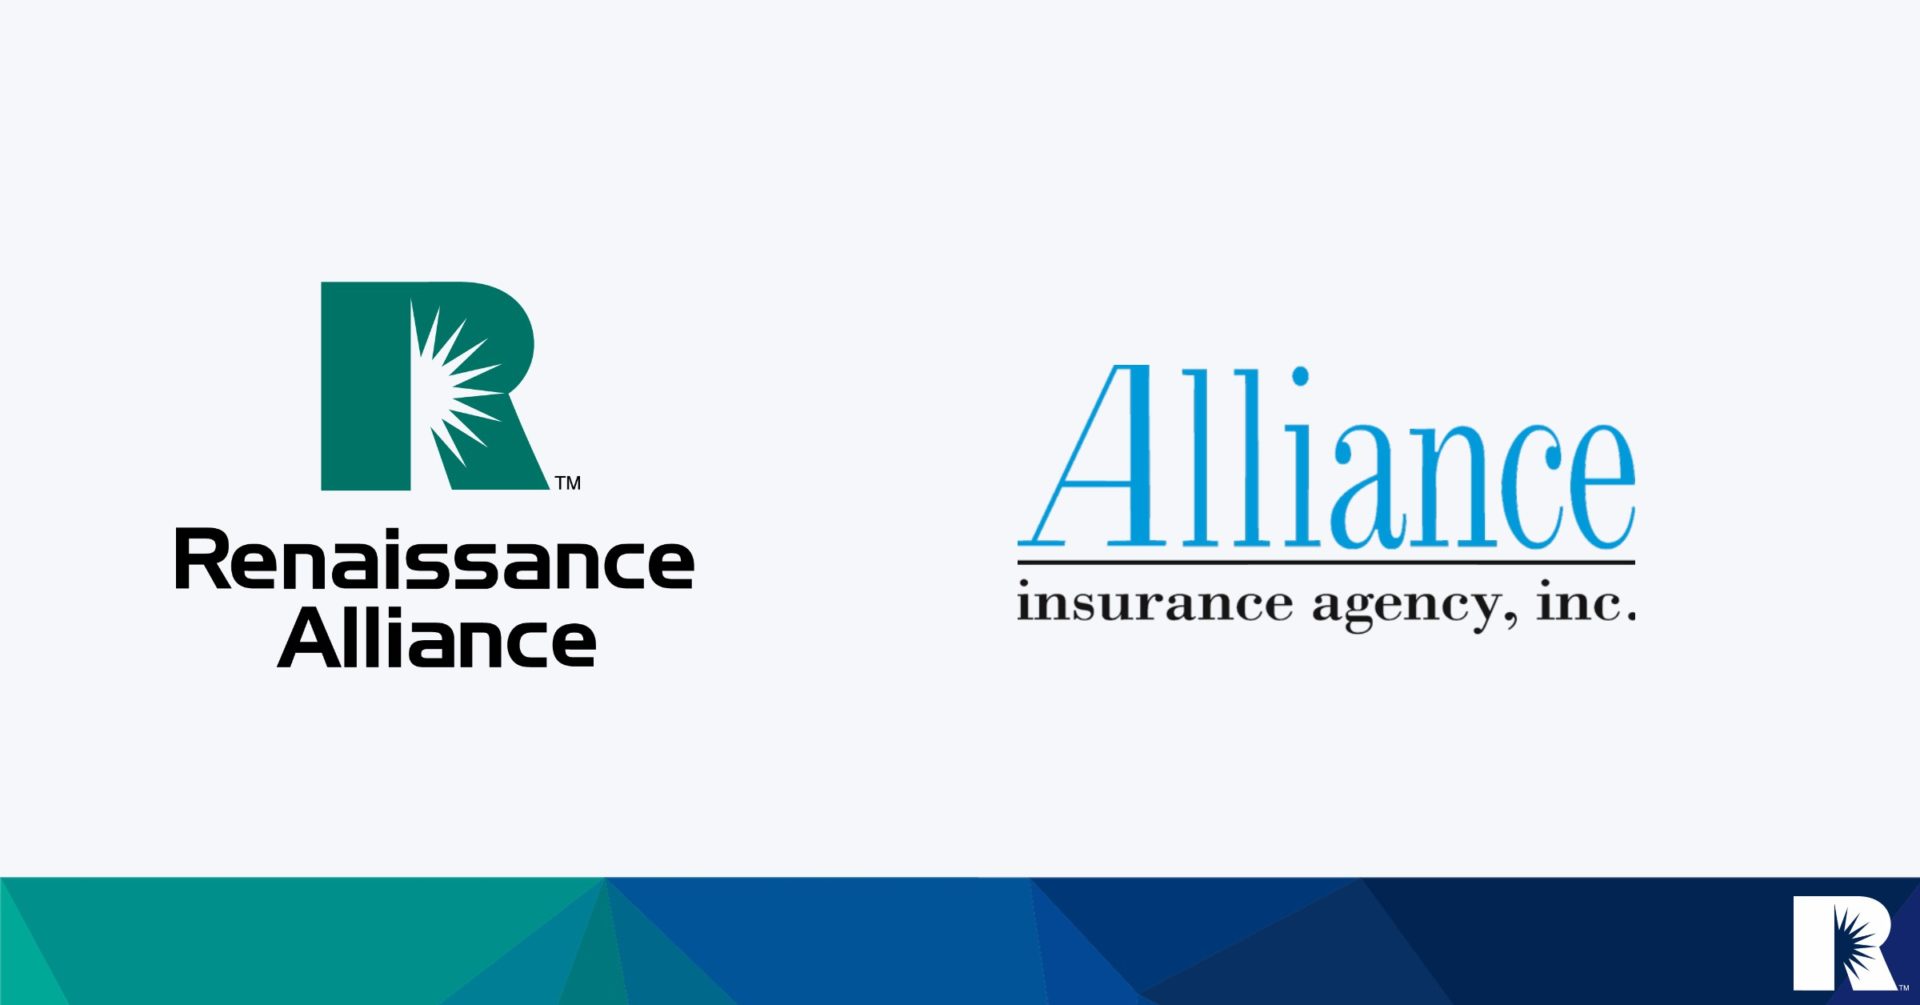 Alliance Insurance Agency Renaissance Announcement Image